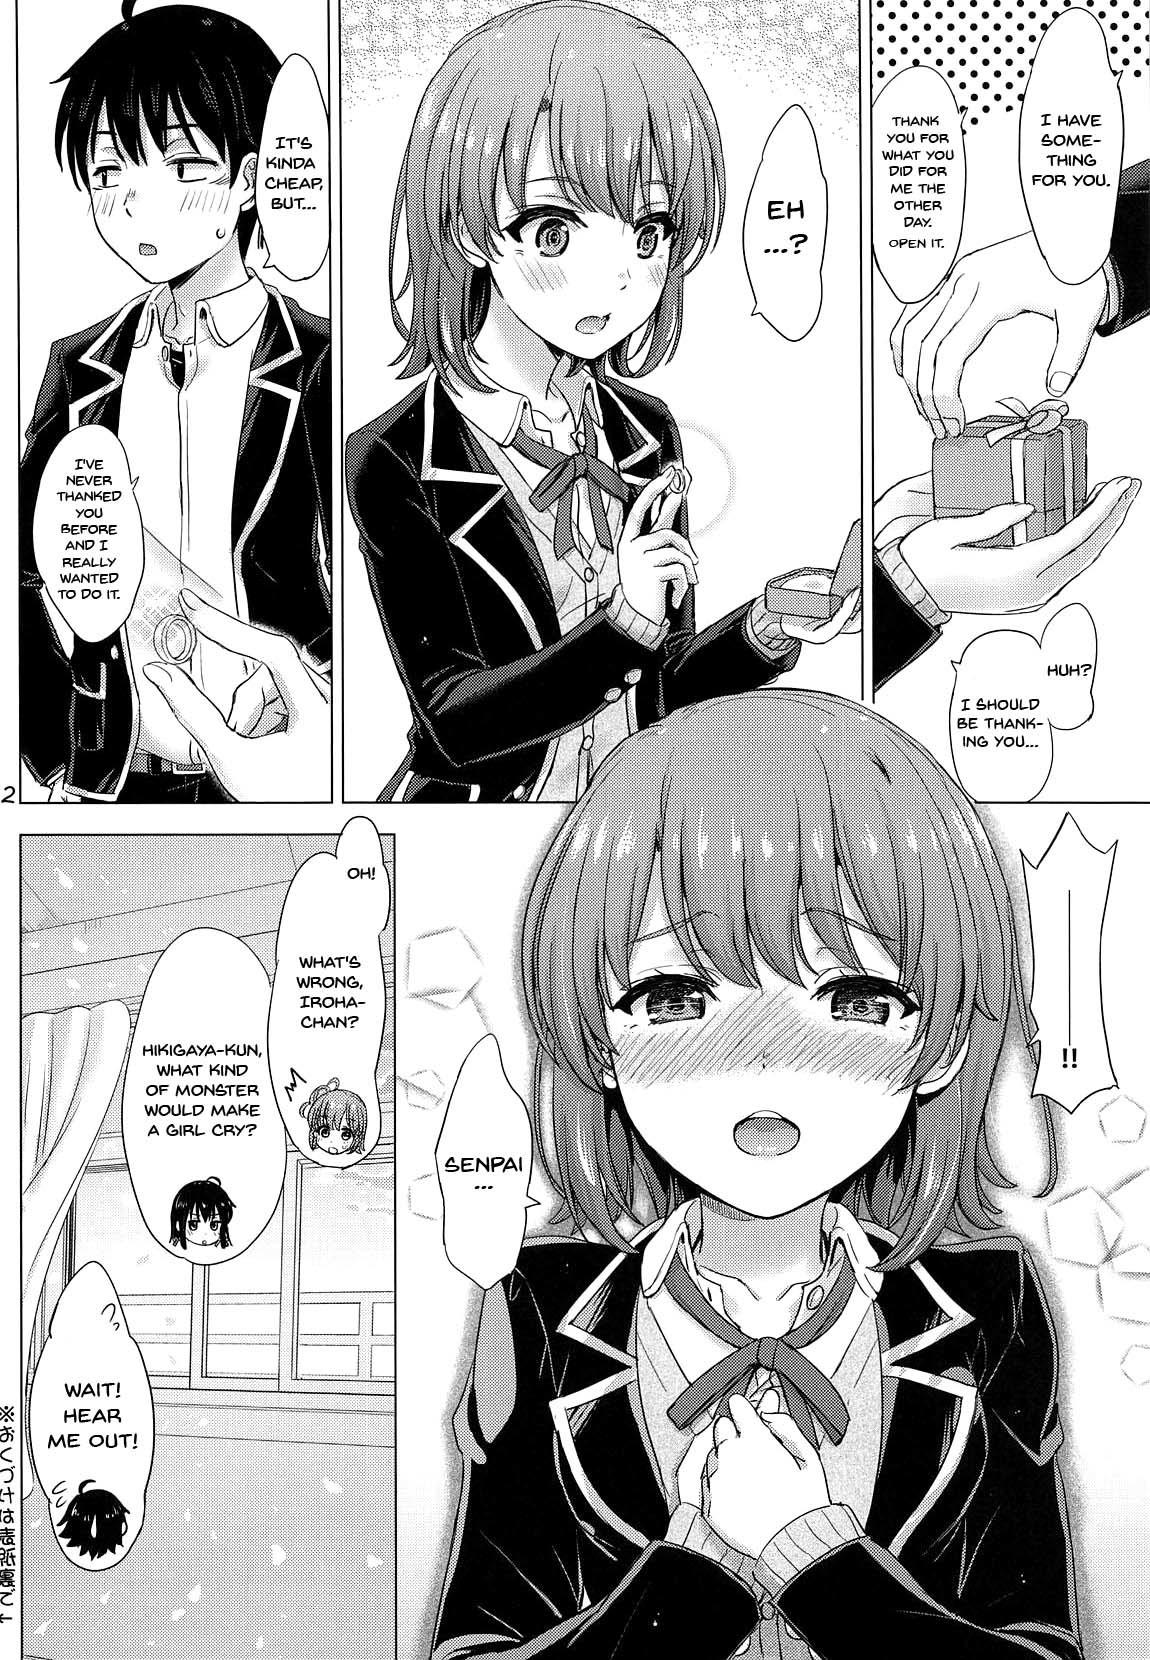 Head Wedding Irohasu! - Iroha's gonna marry you after today's scholl! - Yahari ore no seishun love come wa machigatteiru And - Page 21